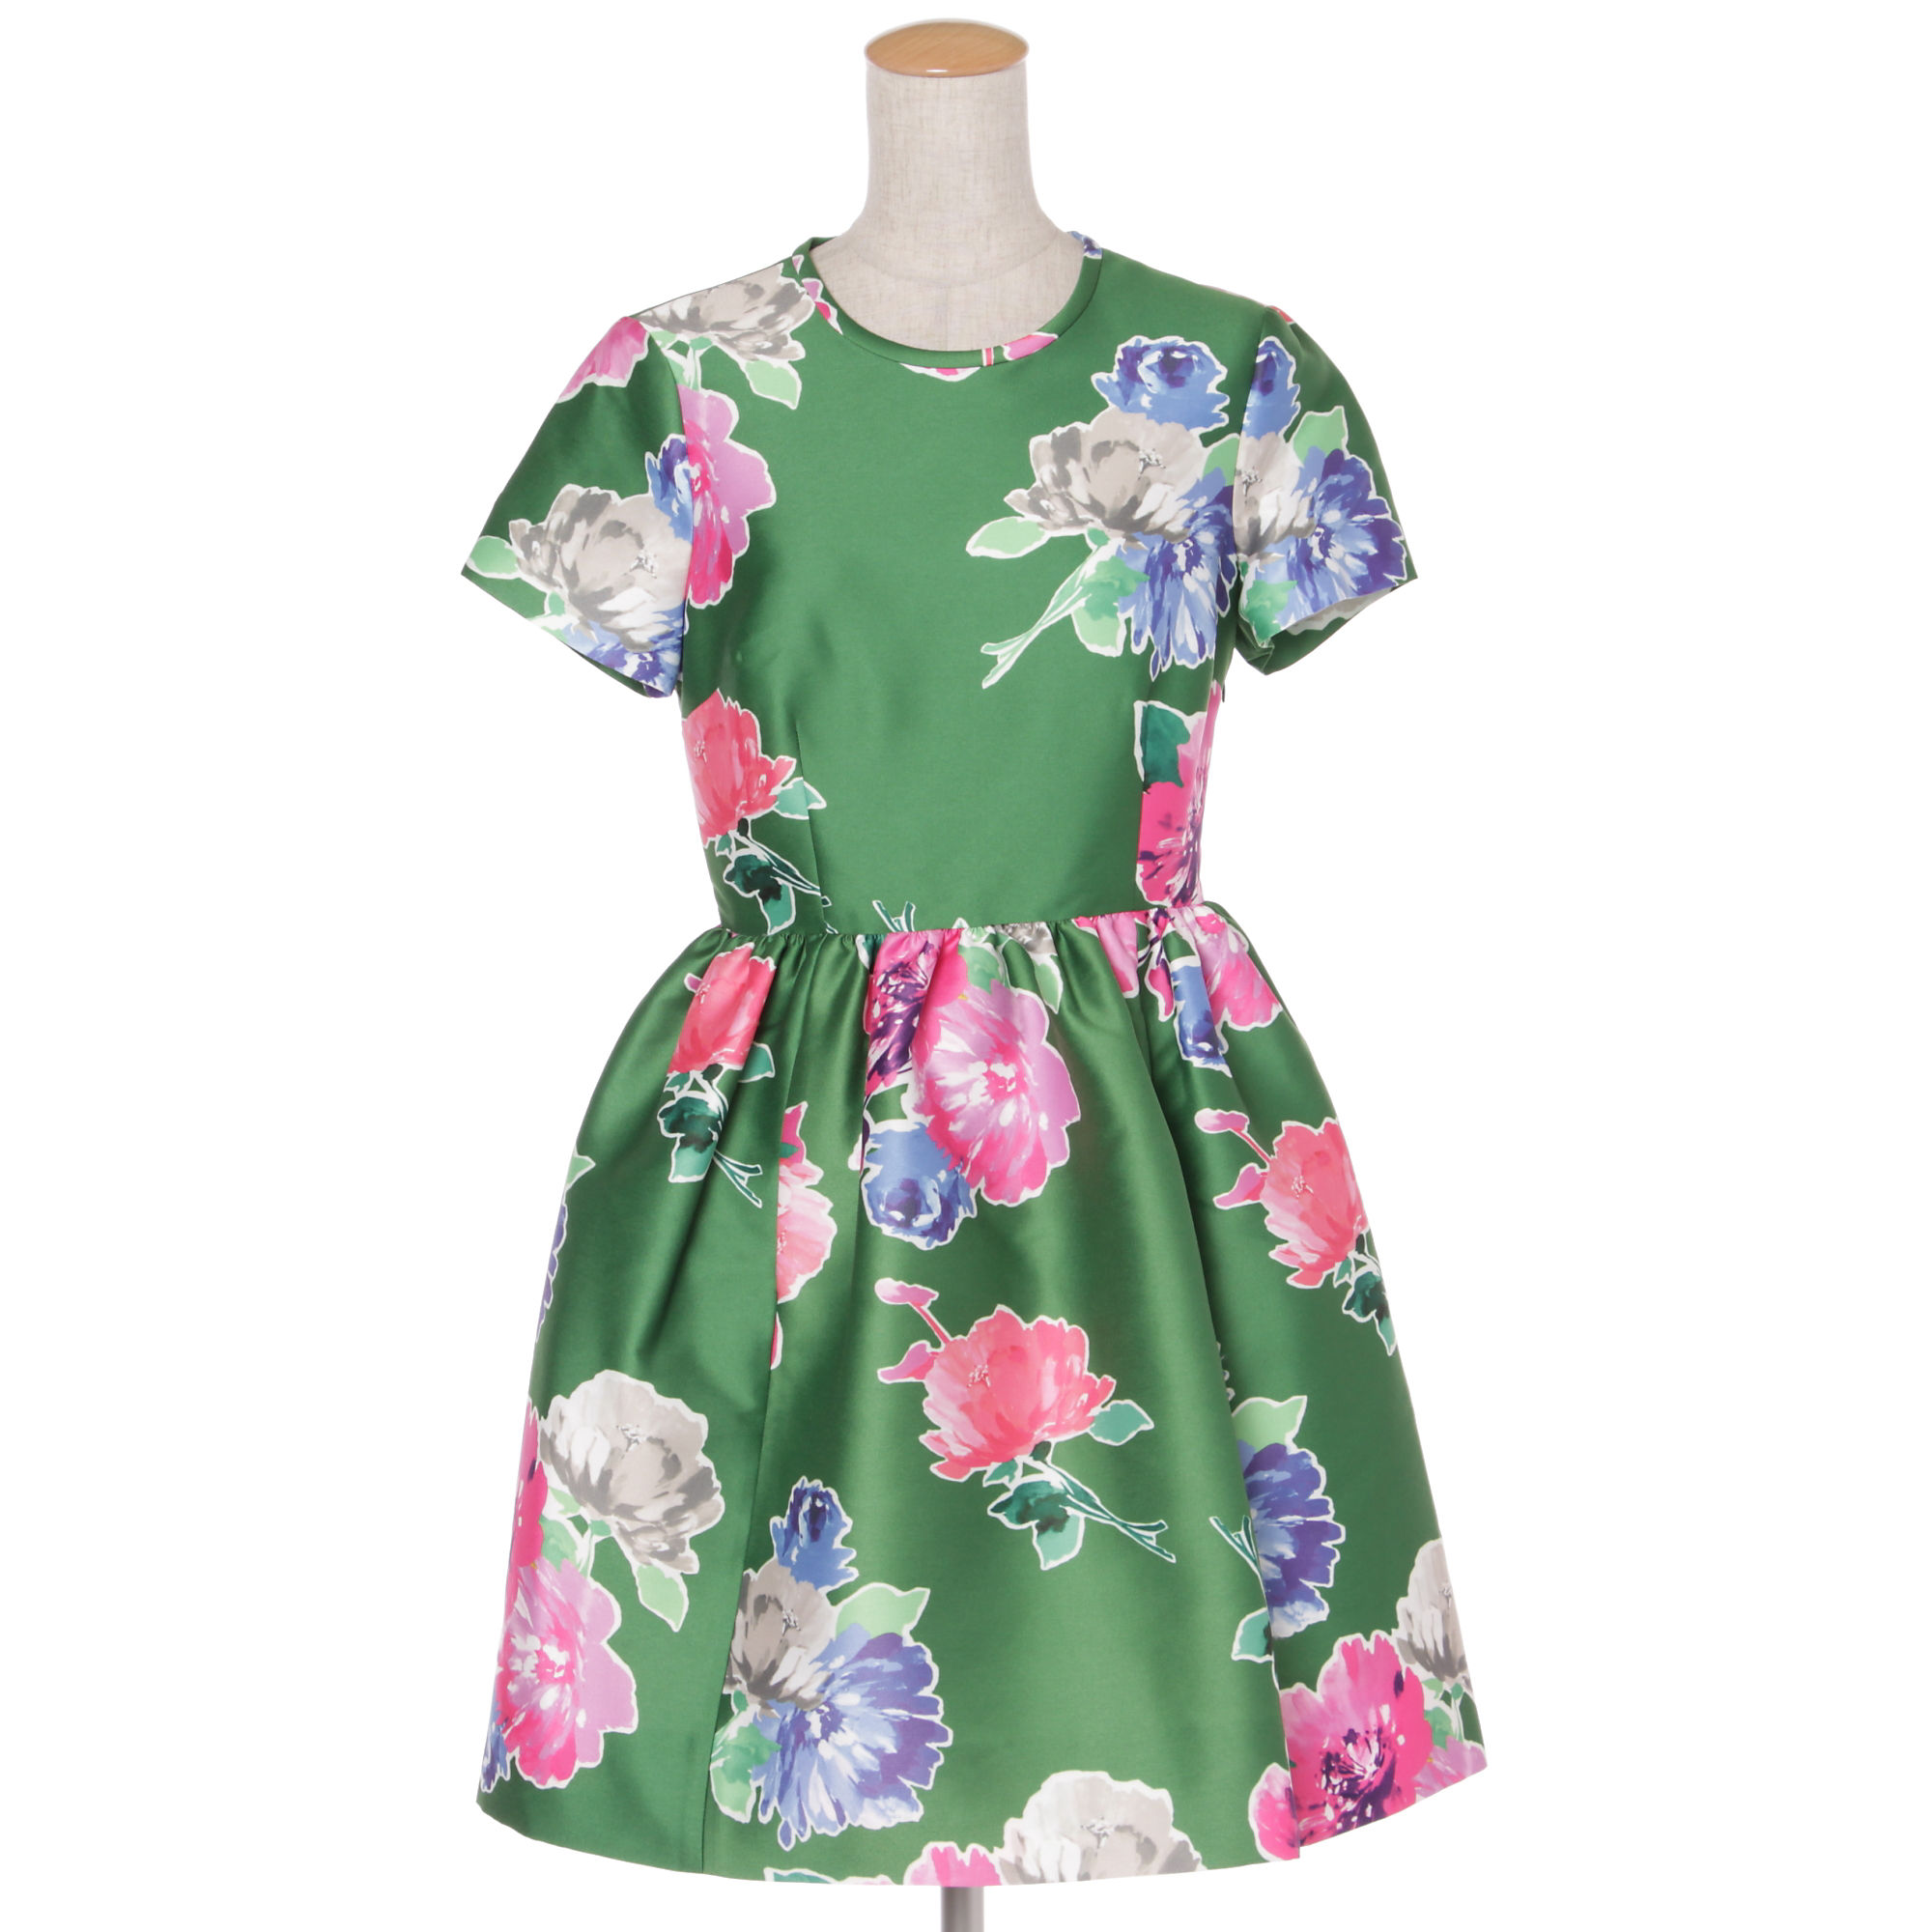 貫地谷しほり グリーンの花柄ワンピースドレス マザーゲーム 衣装 第3話 女性芸能人のドラマ衣装